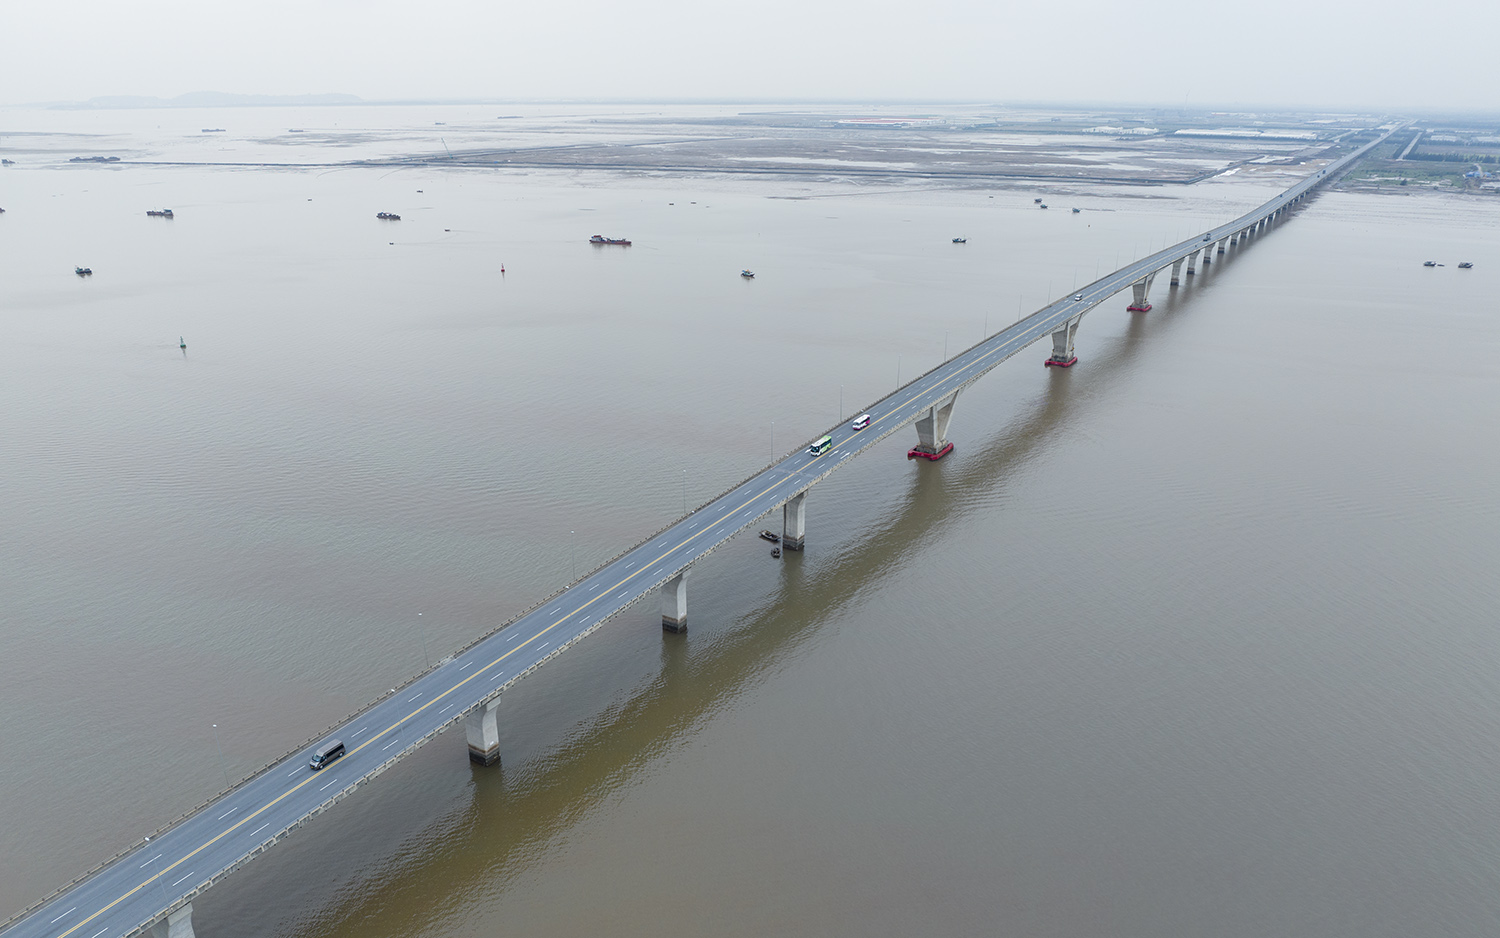 Cầu vượt biển Đình Vũ - Cát Hải hay còn có tên gọi khác là Tân Vũ - Lạch Huyện được khởi công xây dựng vào ngày 15/2/2014 và khánh thành vào ngày 2/9/2017.